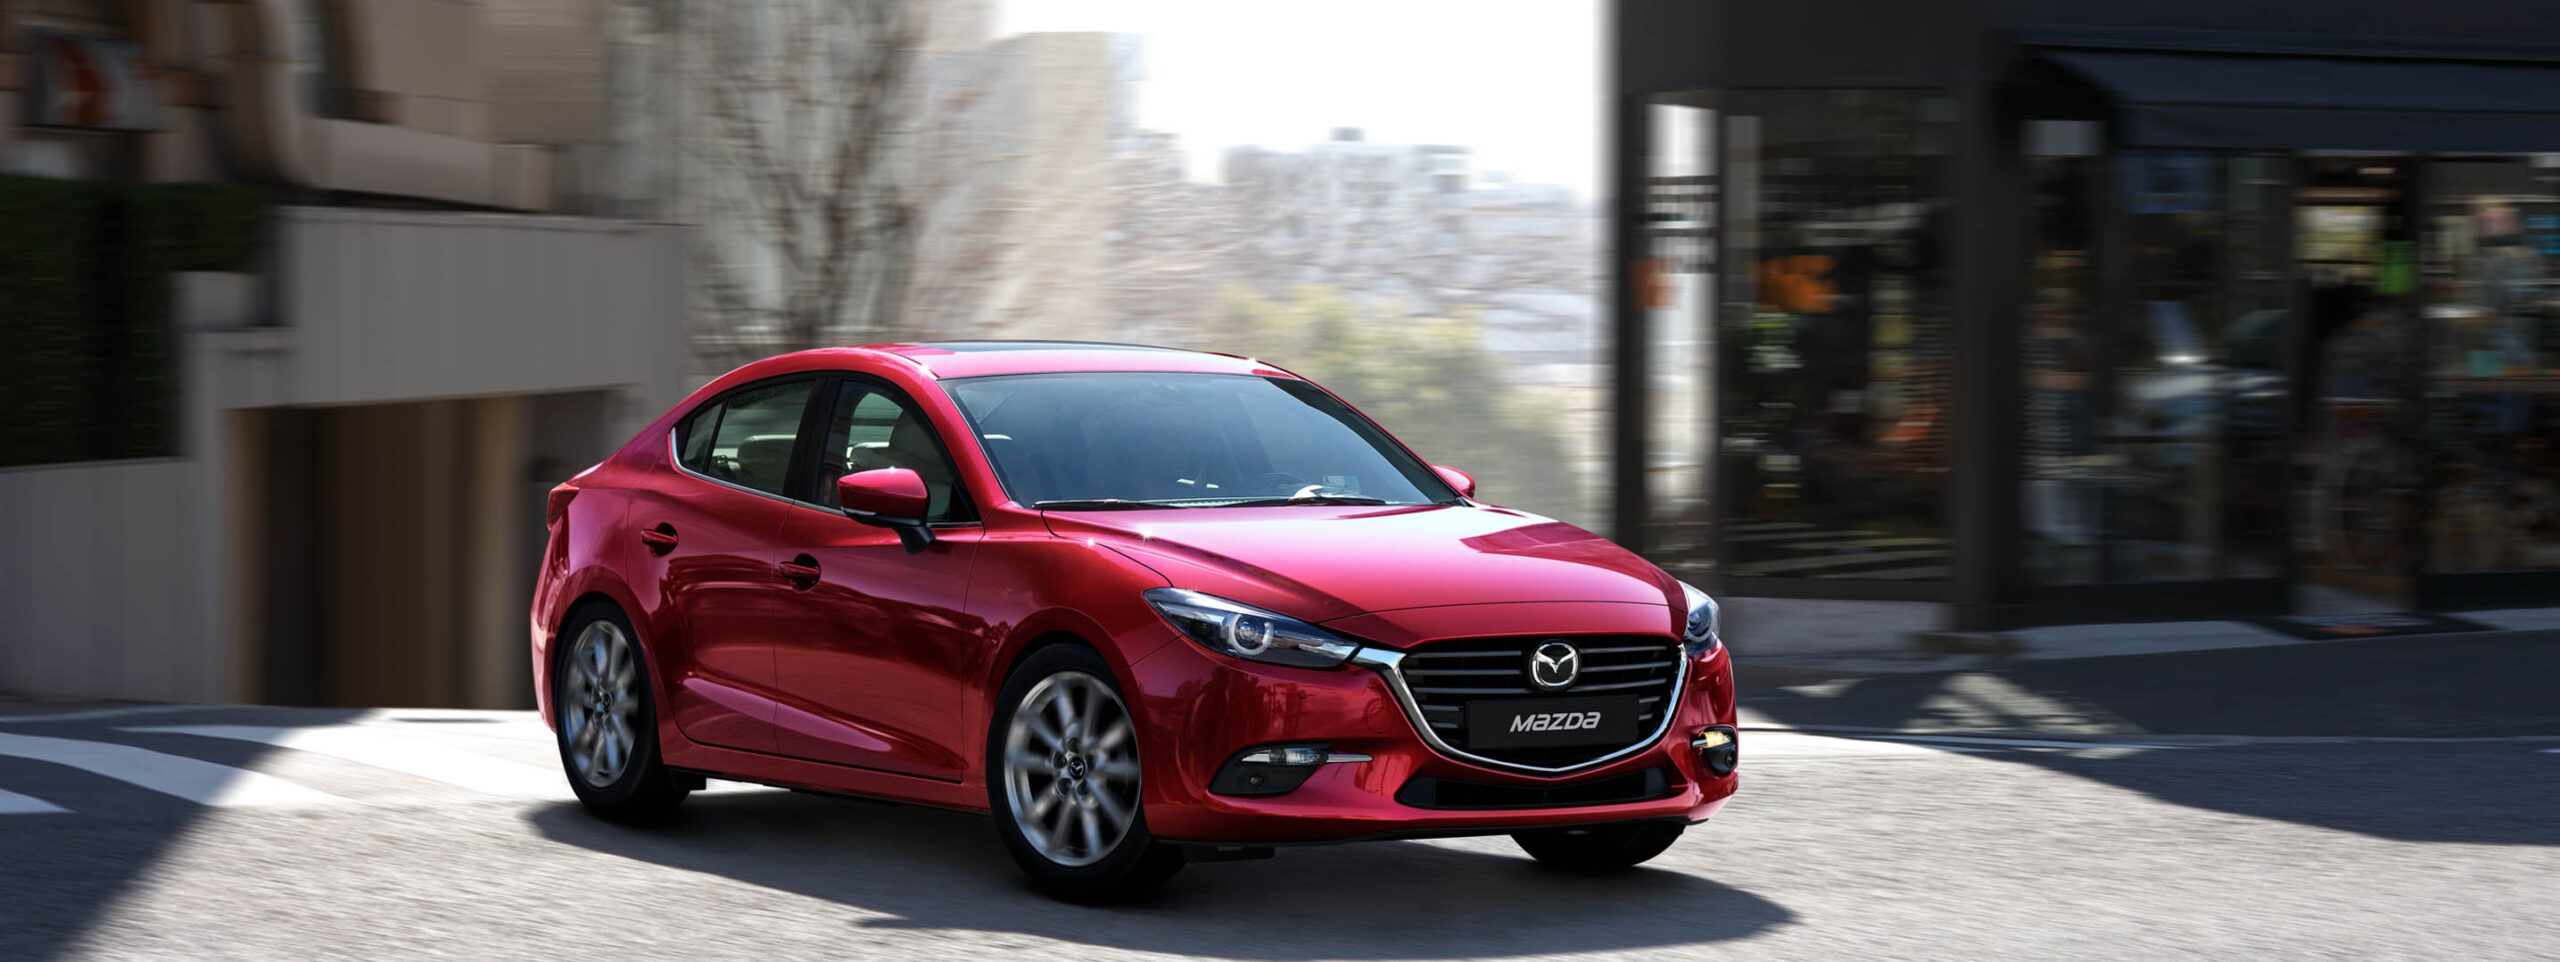 Mazda 3: Bảng giá xe Mazda3 cập nhật tháng 09/2020